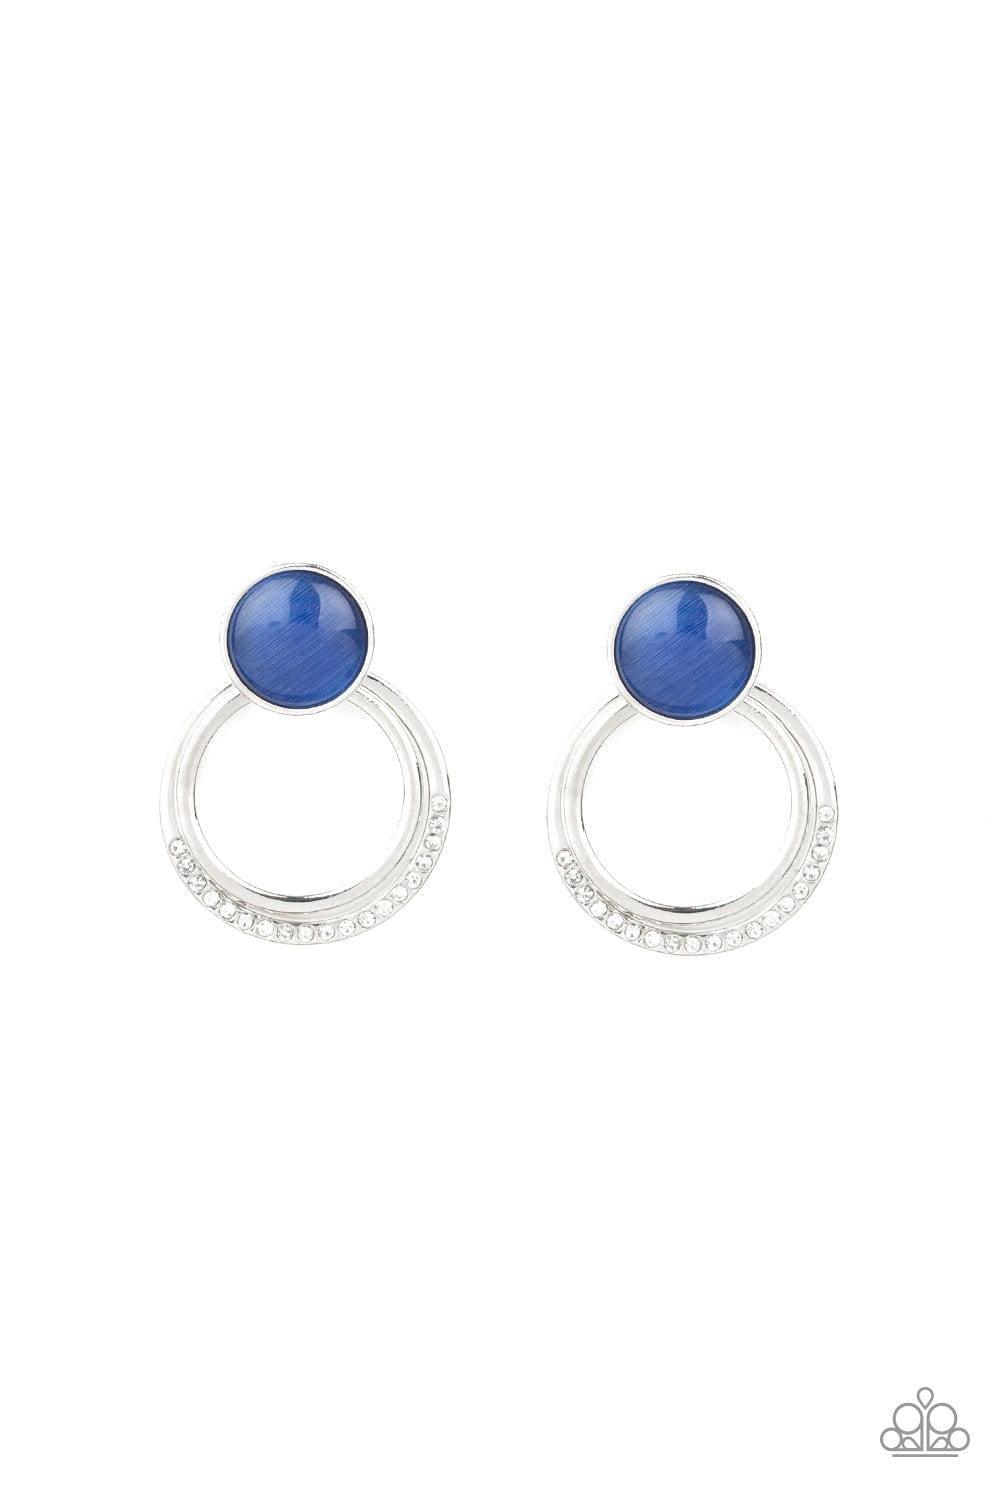 Paparazzi Accessories - Glow Roll - Blue Earrings - Bling by JessieK